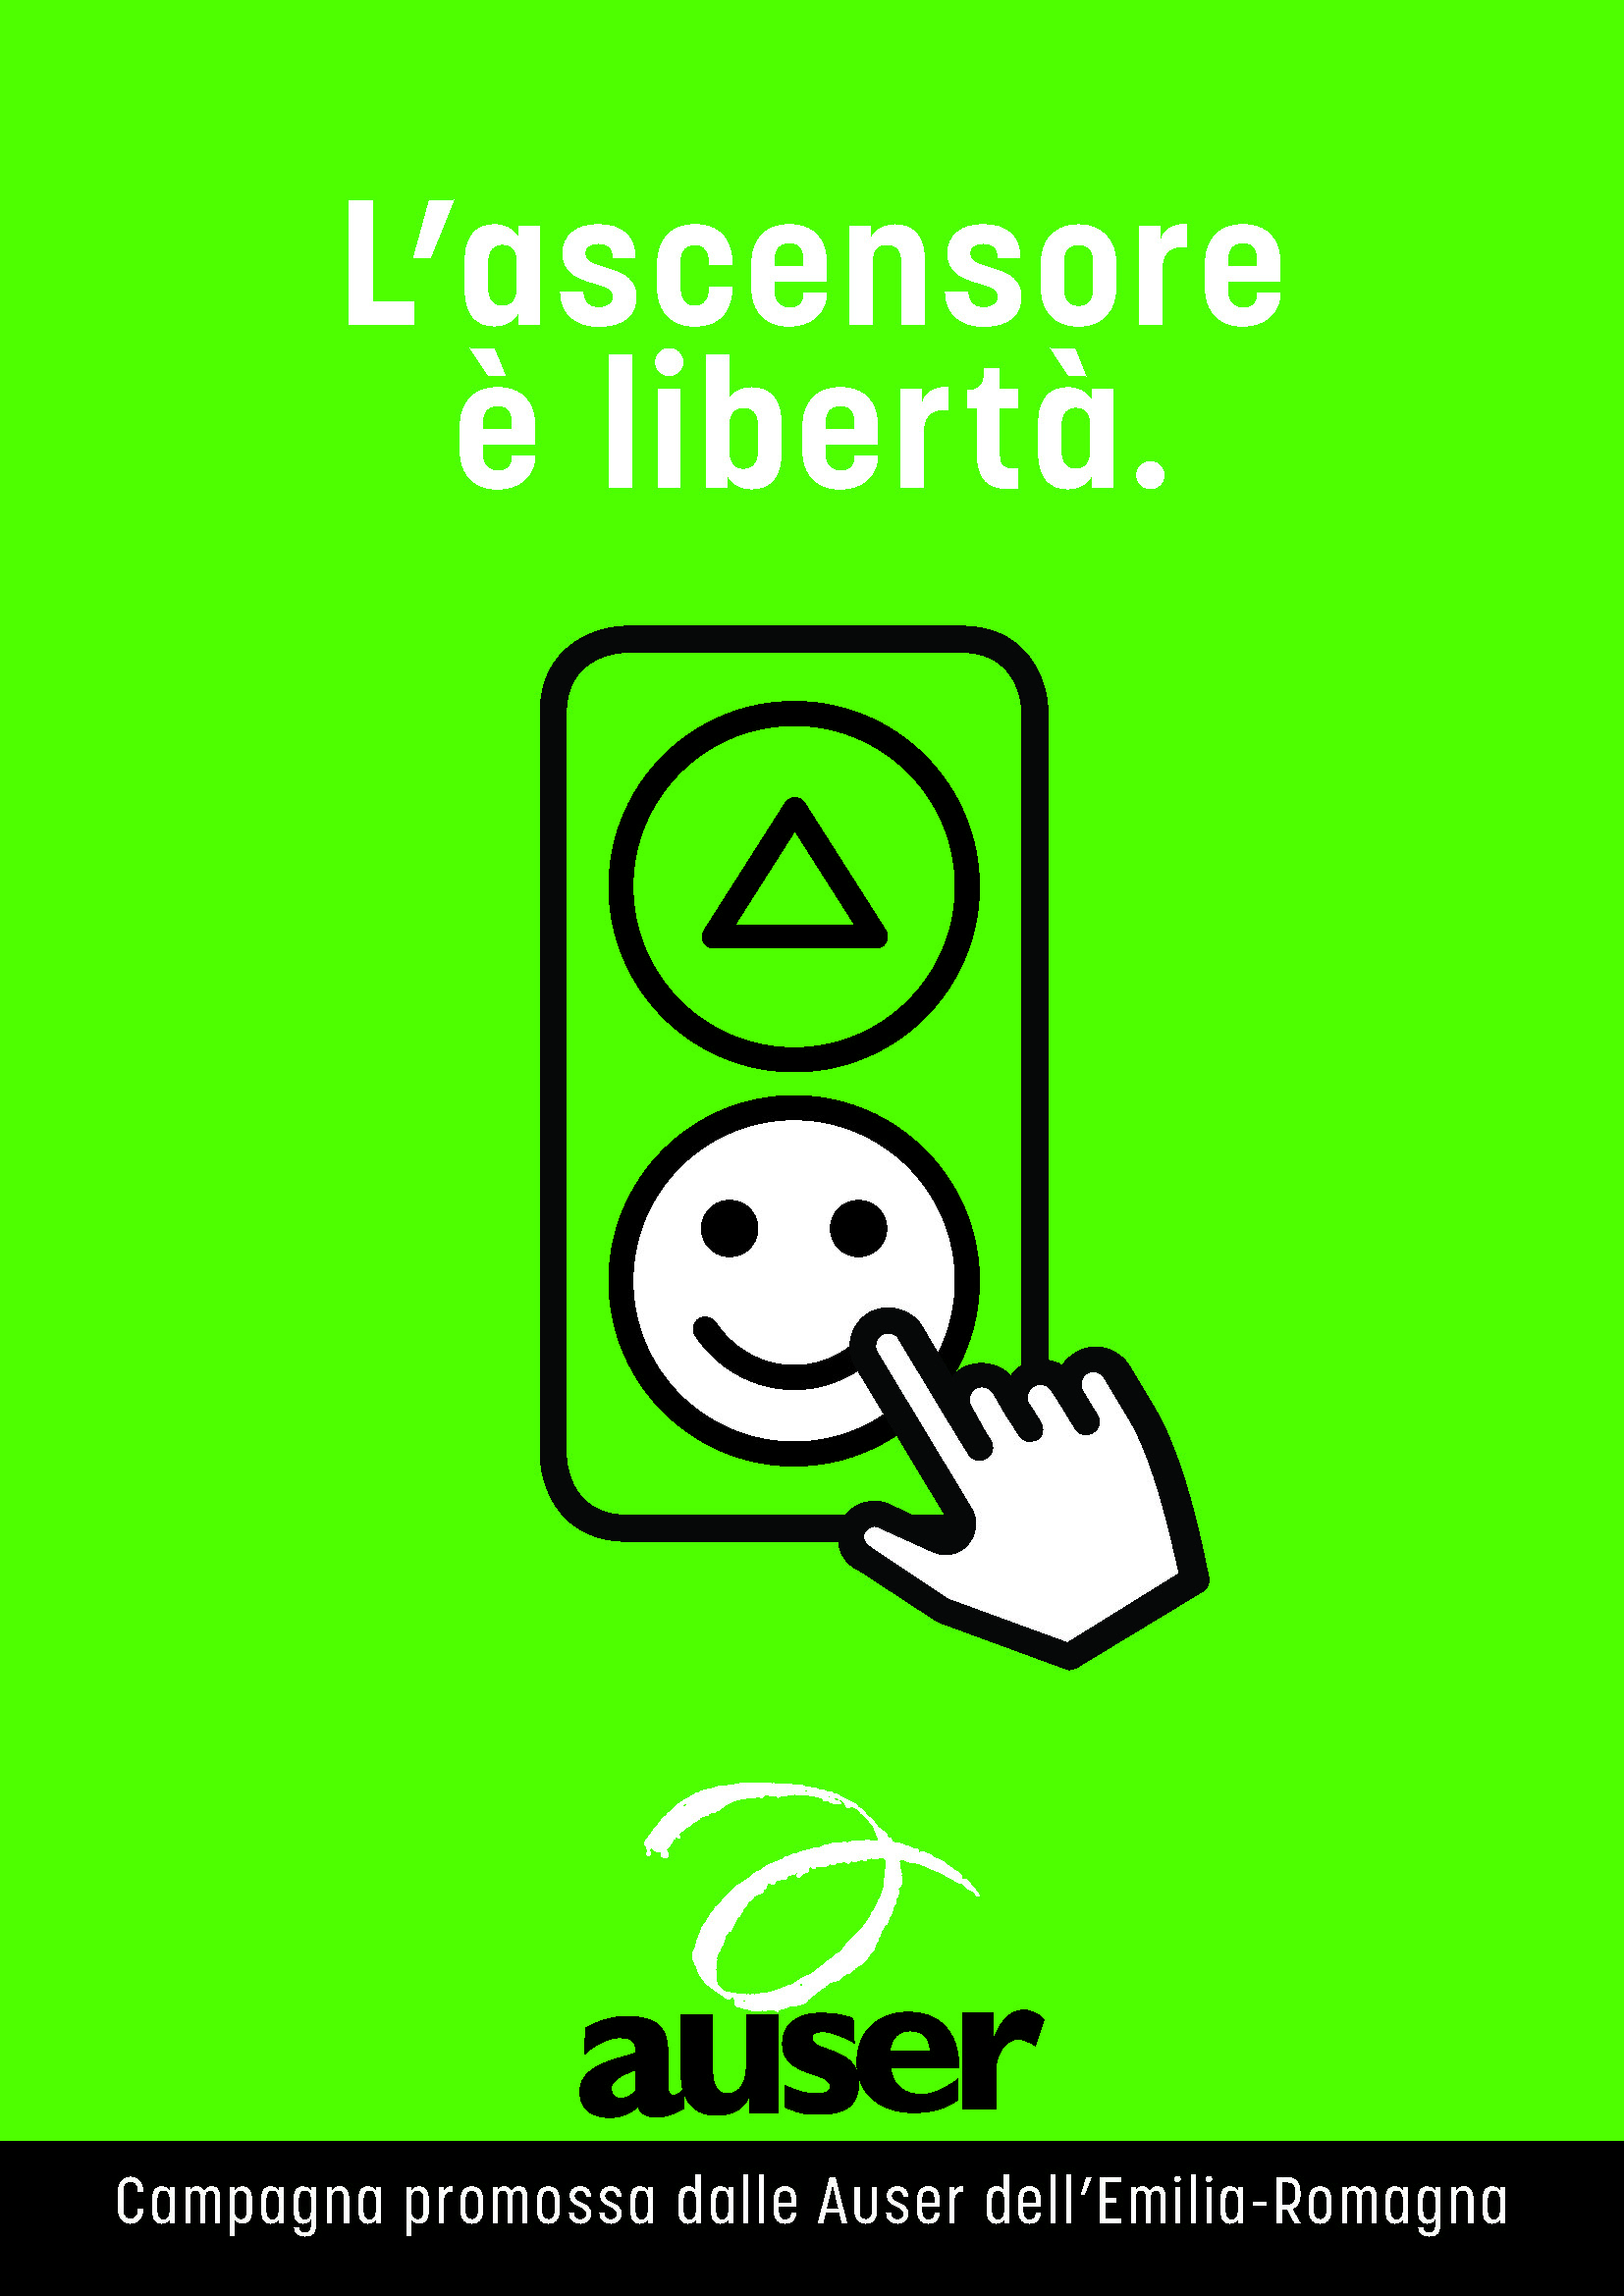 Al momento stai visualizzando “L’ascensore è libertà”, presentazione della campagna delle Auser dell’Emilia Romagna per garantire la mobilità alle persone anziane